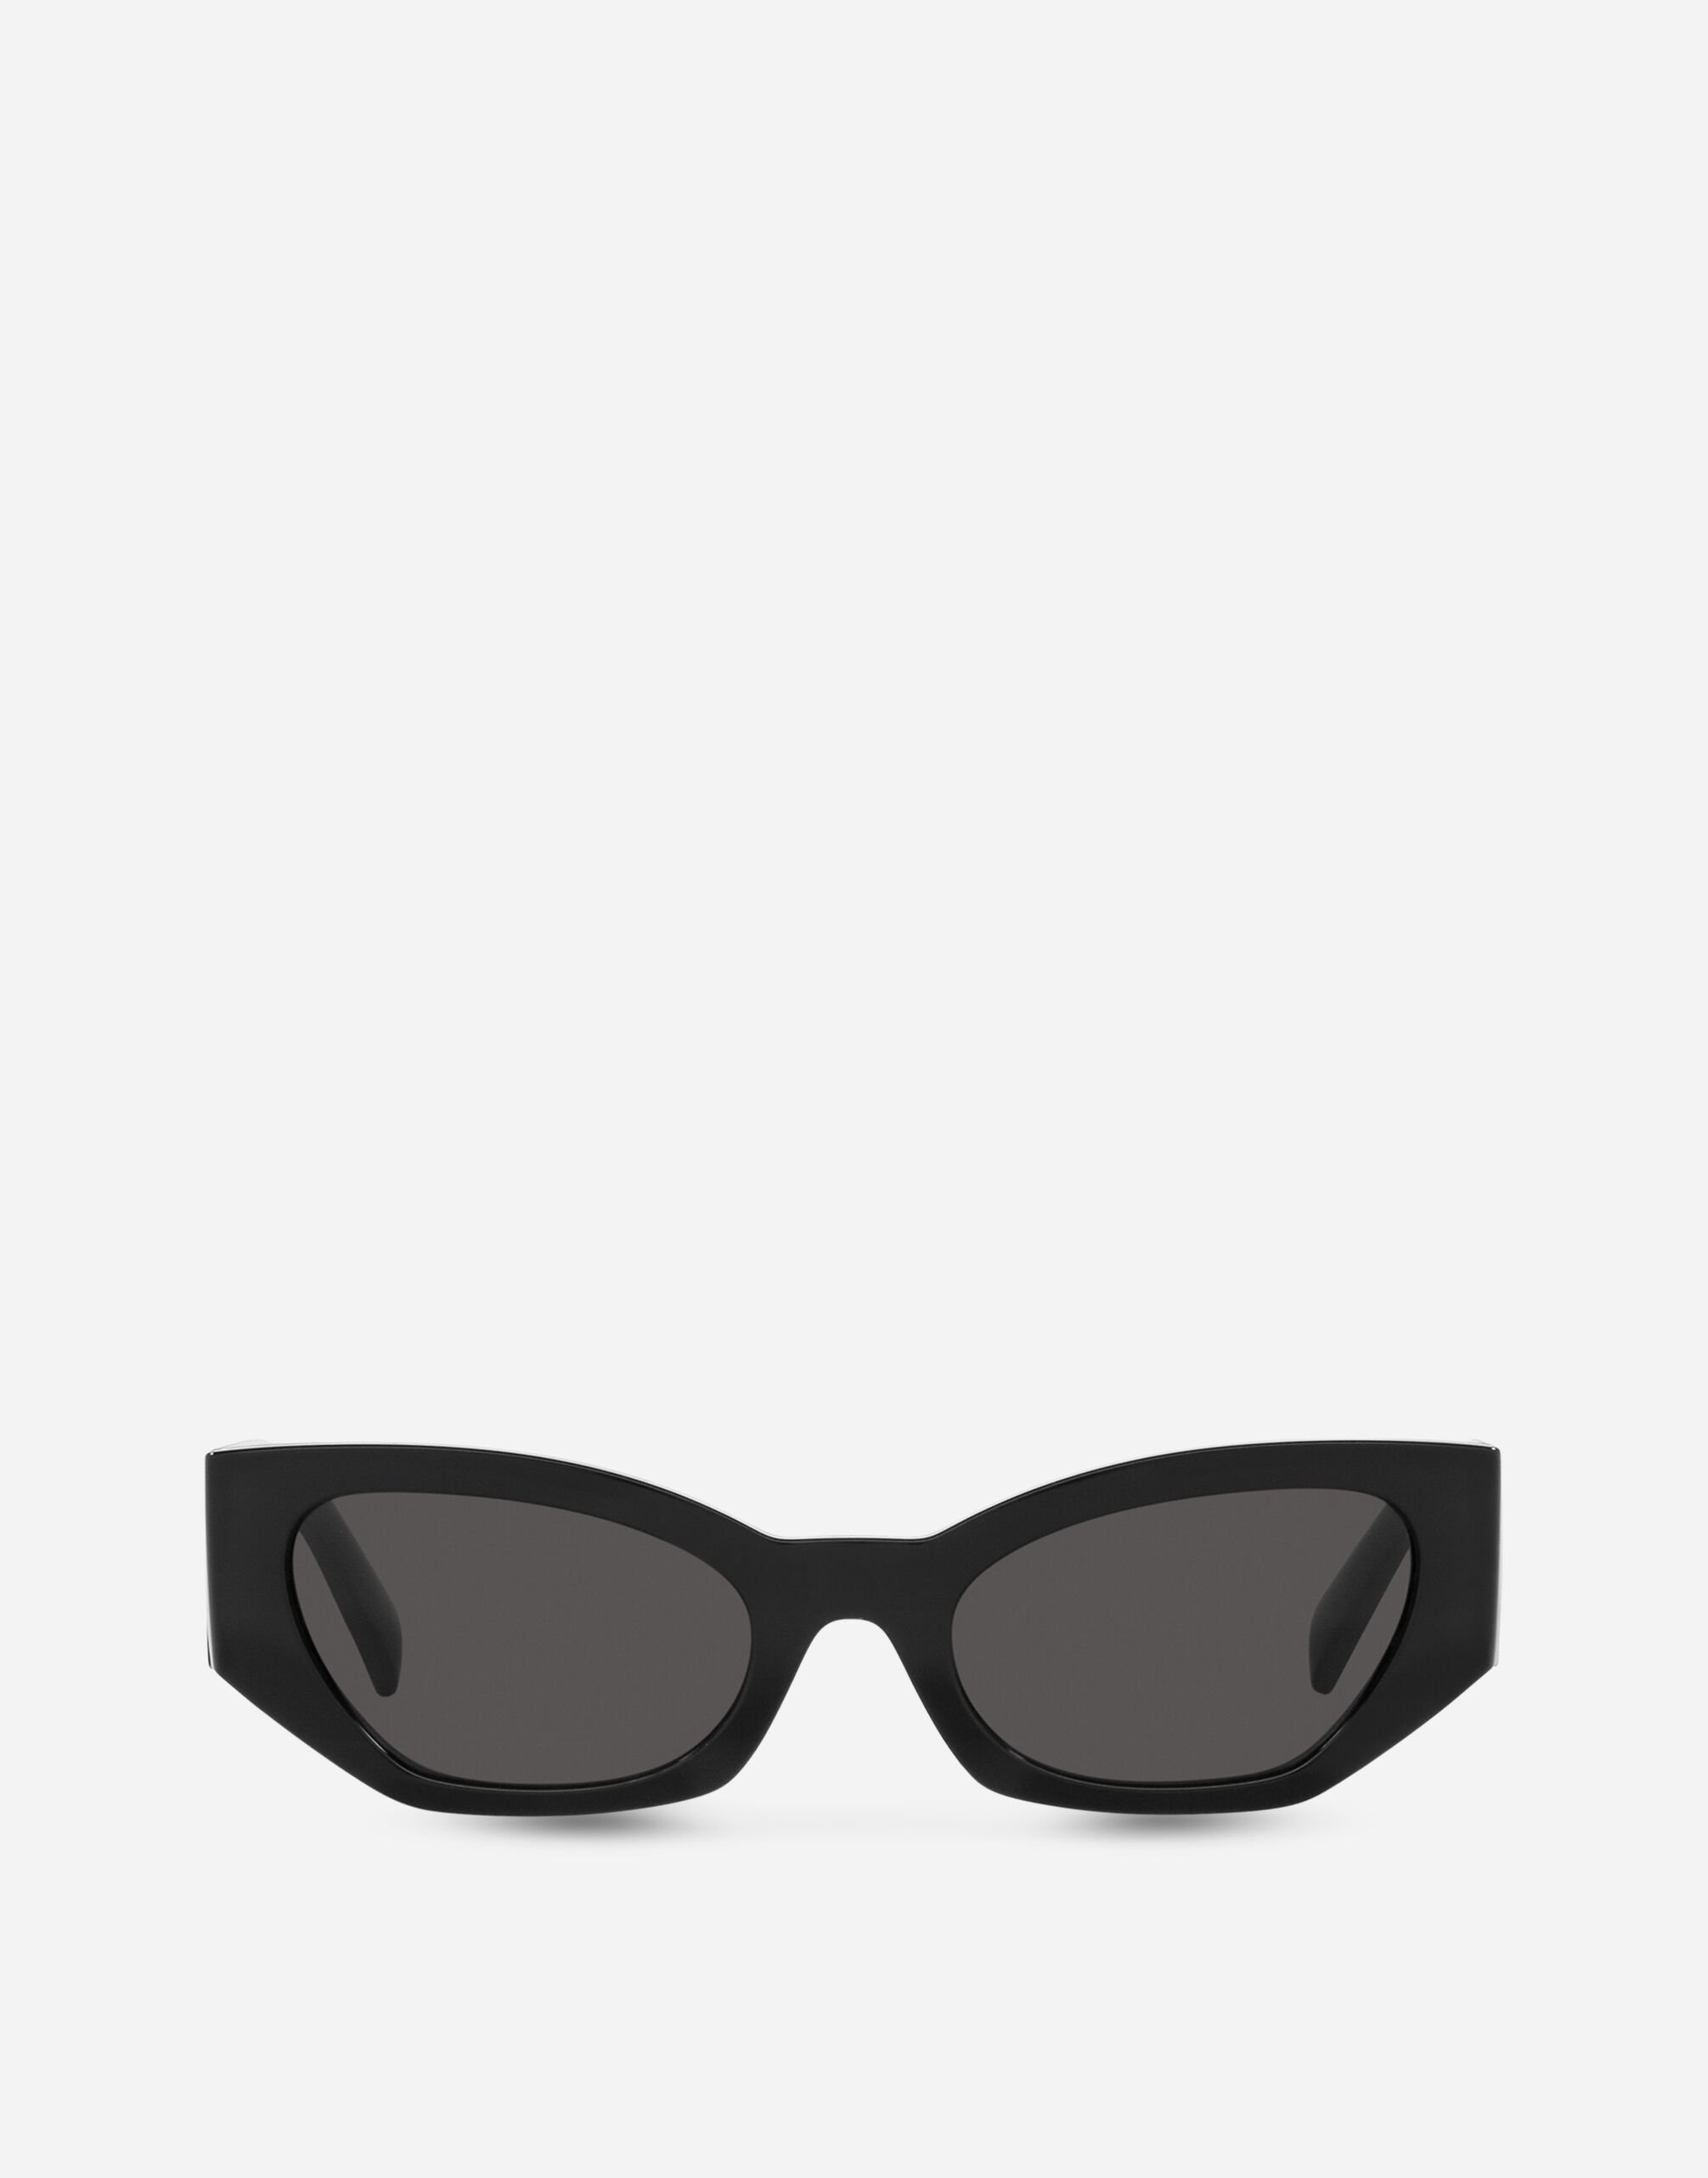 Dolce & Gabbana DG Elastic Sunglasses Black VG6144VN18G